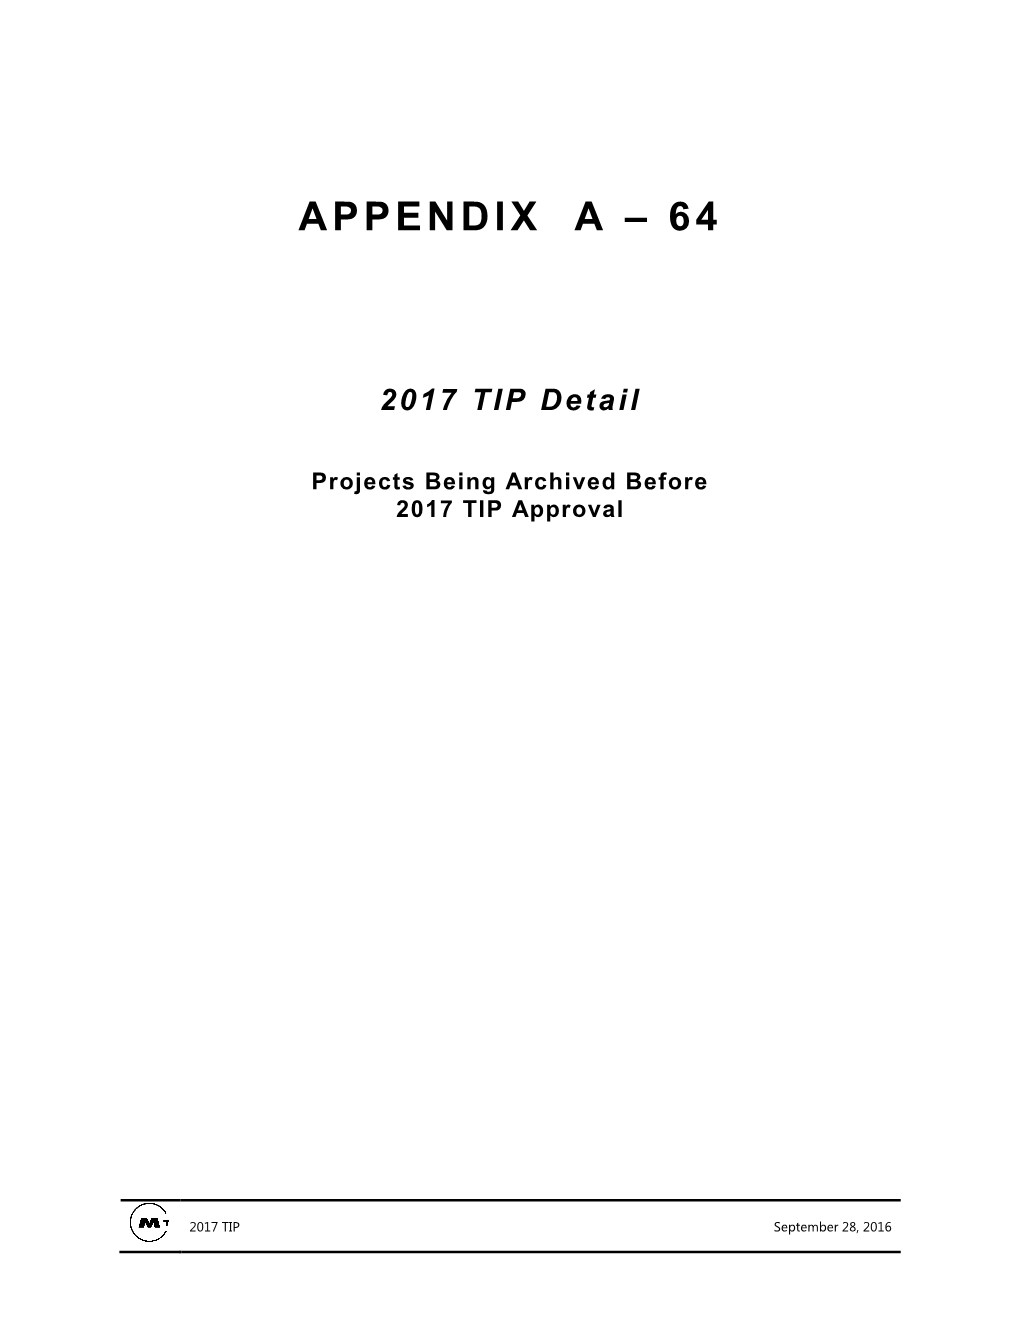 TIP Appendix Title Pages